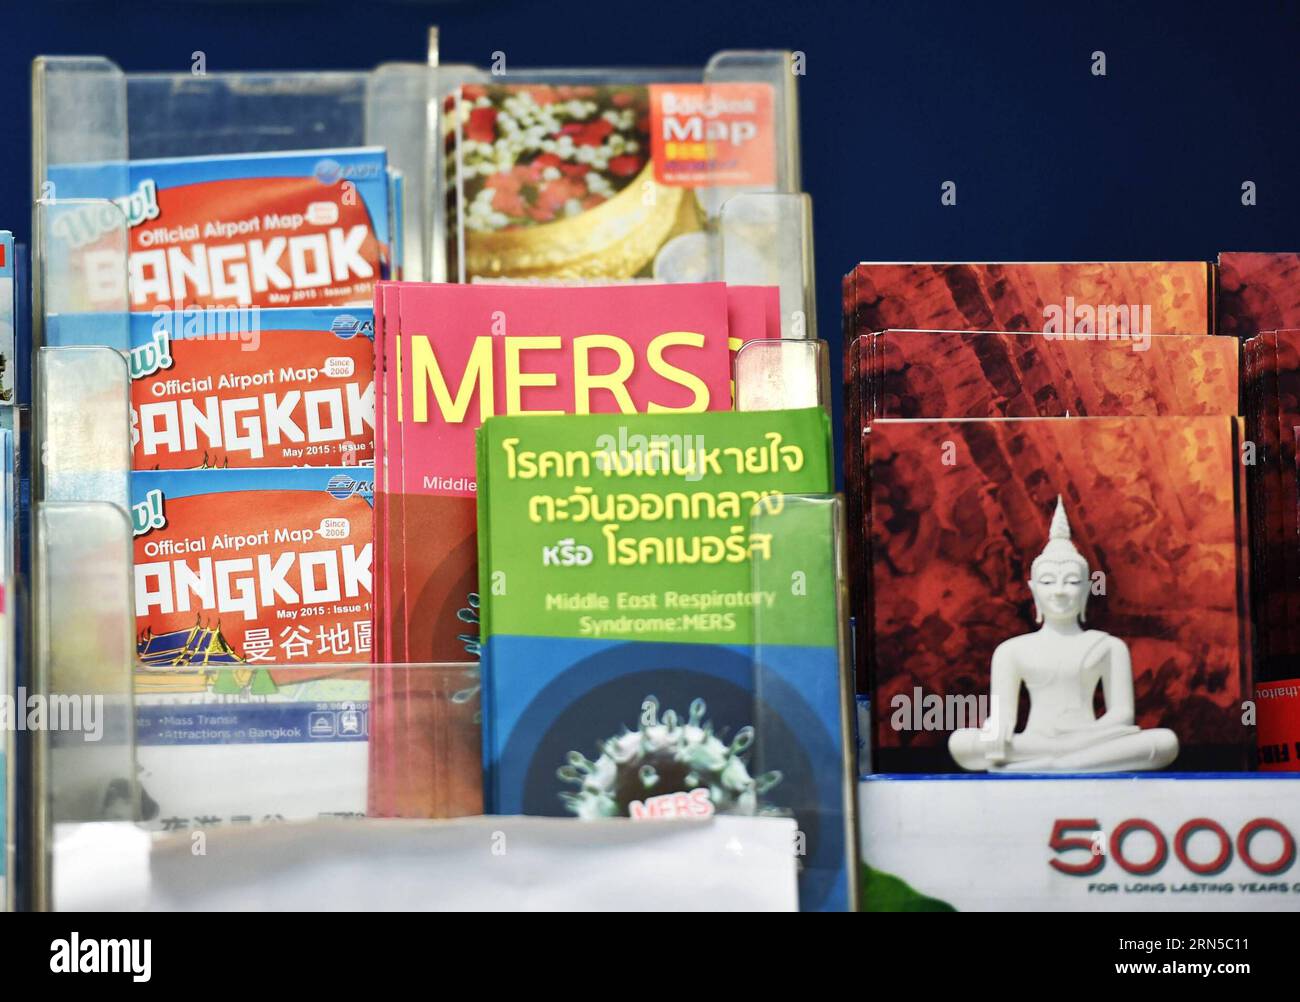 (150620) -- BANGKOK, le 20 juin 2015 -- des brochures sur la prévention du mers sont offertes au poste de police touristique de l'aéroport Suvarnabhumi de Bangkok, Thaïlande, le 20 juin 2015. Le ministère de la Santé publique de Thaïlande a confirmé jeudi le premier cas de syndrome respiratoire du Moyen-Orient (mers). A Bangkok, la capitale du pays et un centre de transport international, les citoyens et les voyageurs ont commencé à adopter des méthodes préventives telles que le port de masques protecteurs pour le visage. THAILAND-BANGKOK-mers-DISEASE-PREVENTION LixMangmang PUBLICATIONxNOTxINxCHN 150620 Bangkok juin 20 2015 brochures SUR Mers Banque D'Images